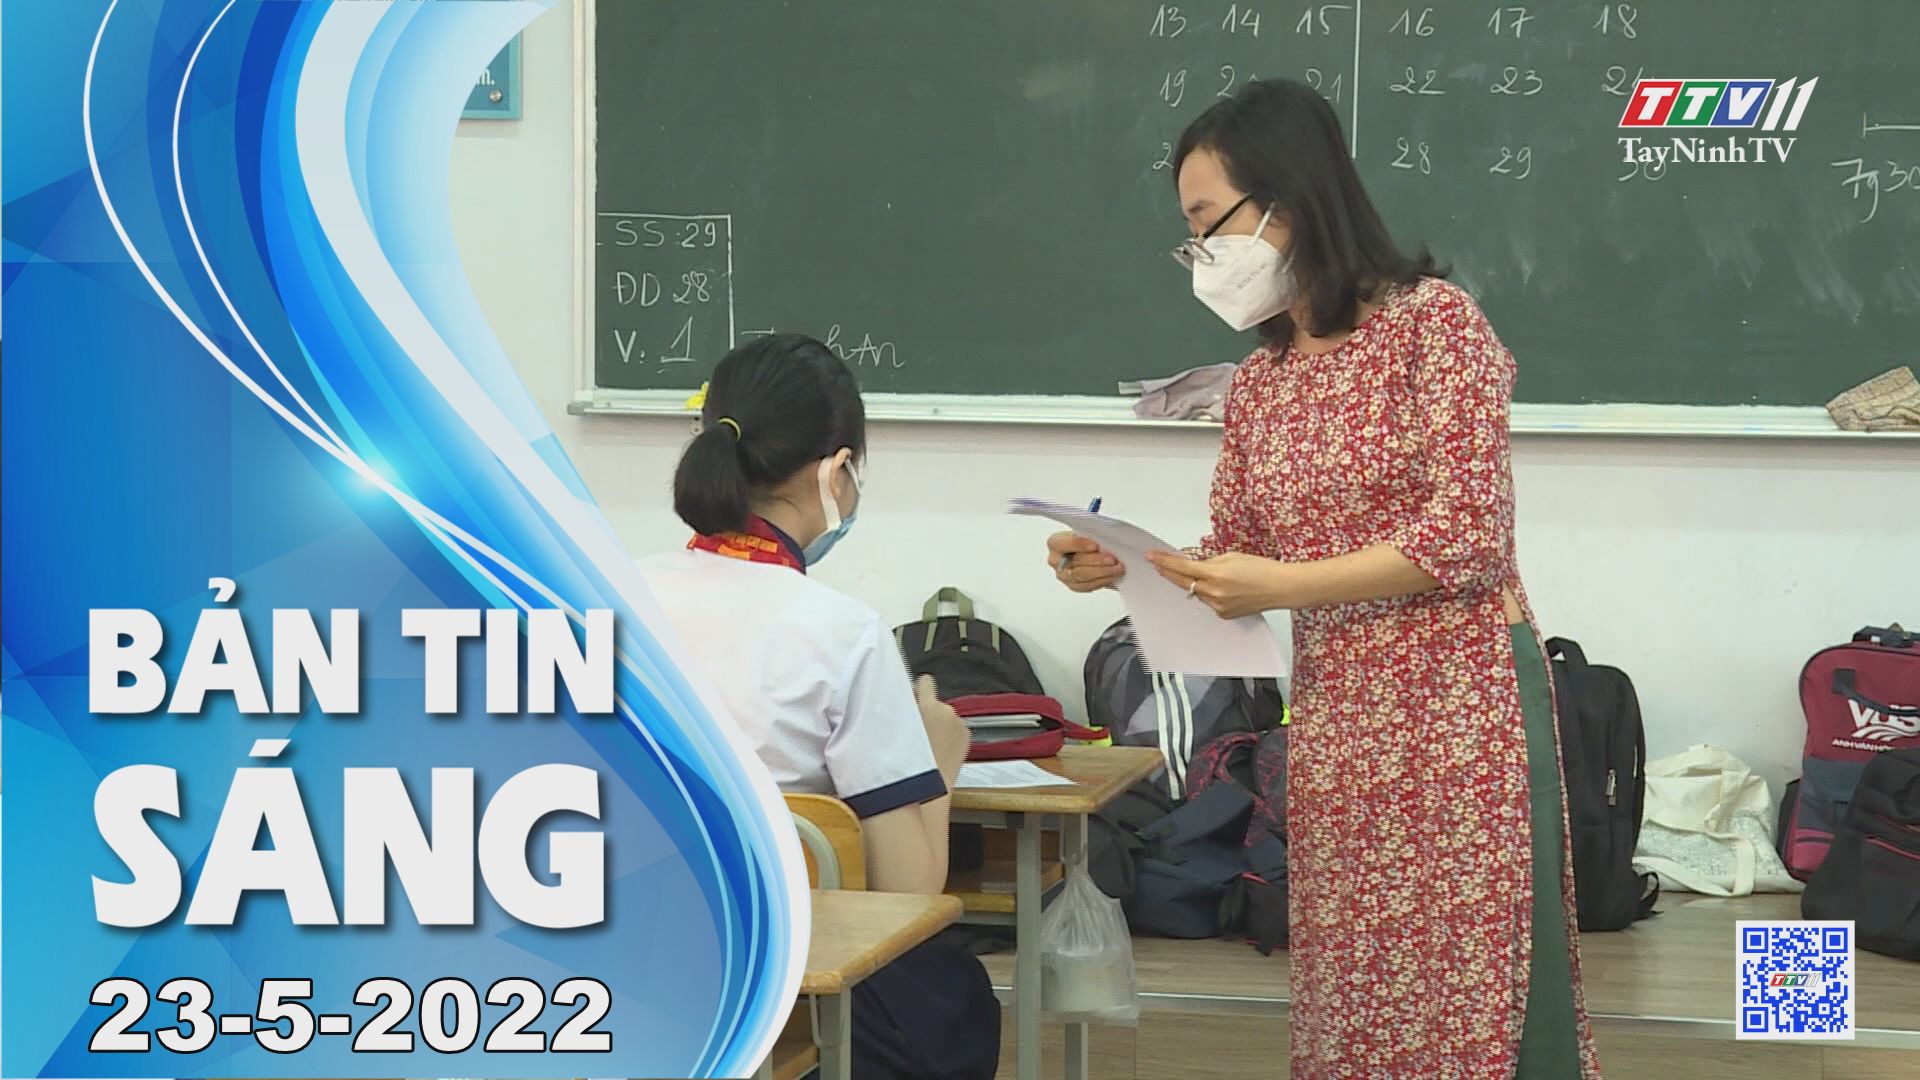 Bản tin sáng 23-5-2022 | Tin tức hôm nay | TayNinhTV